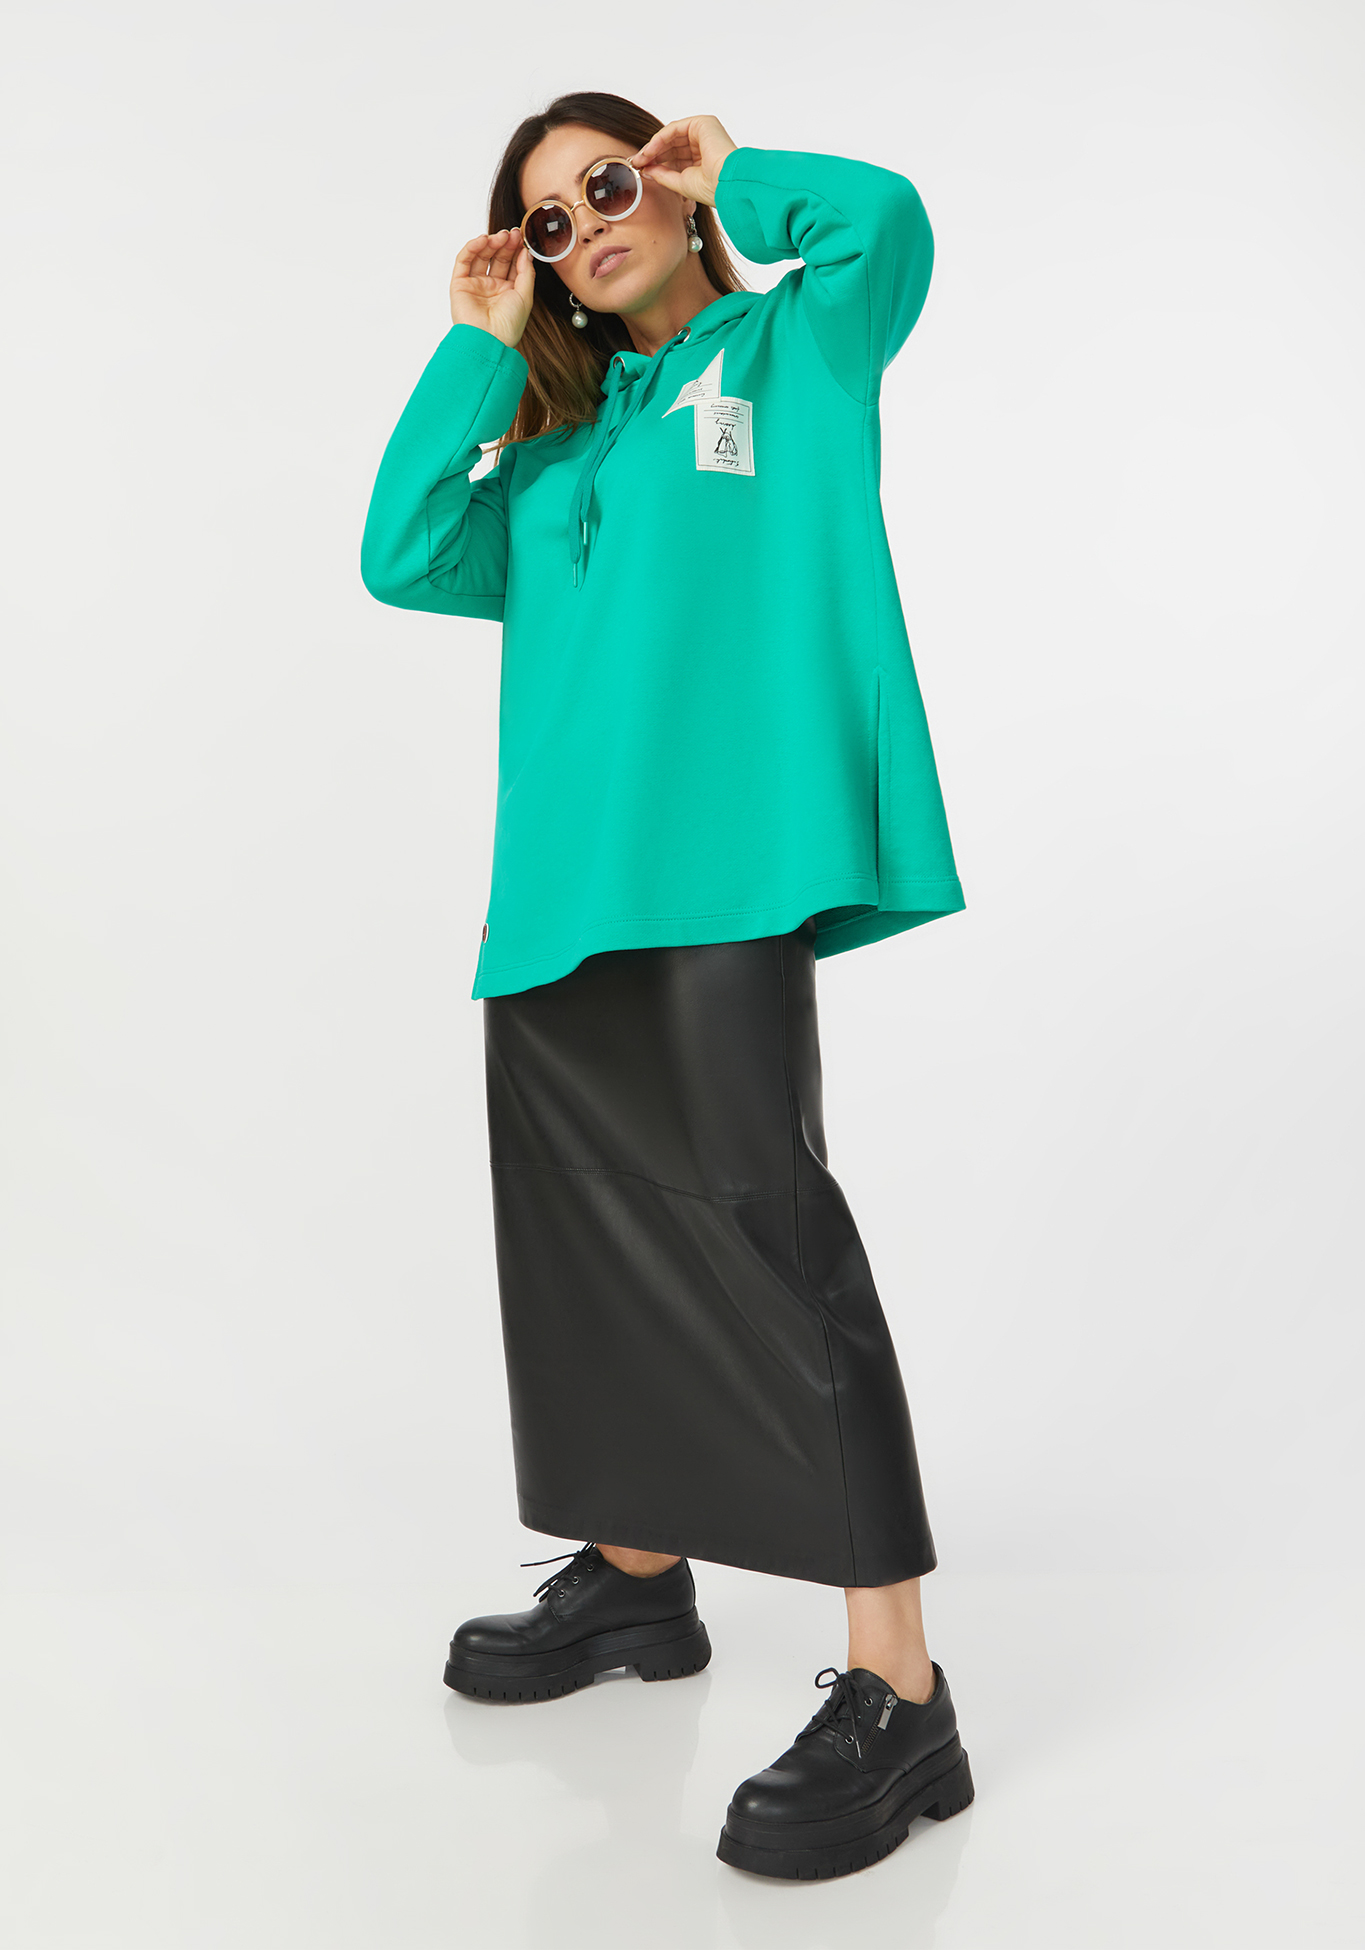 Свитшот с капюшоном и разрезами сзади Надежда Ангарская, размер 46, цвет зеленый - фото 7